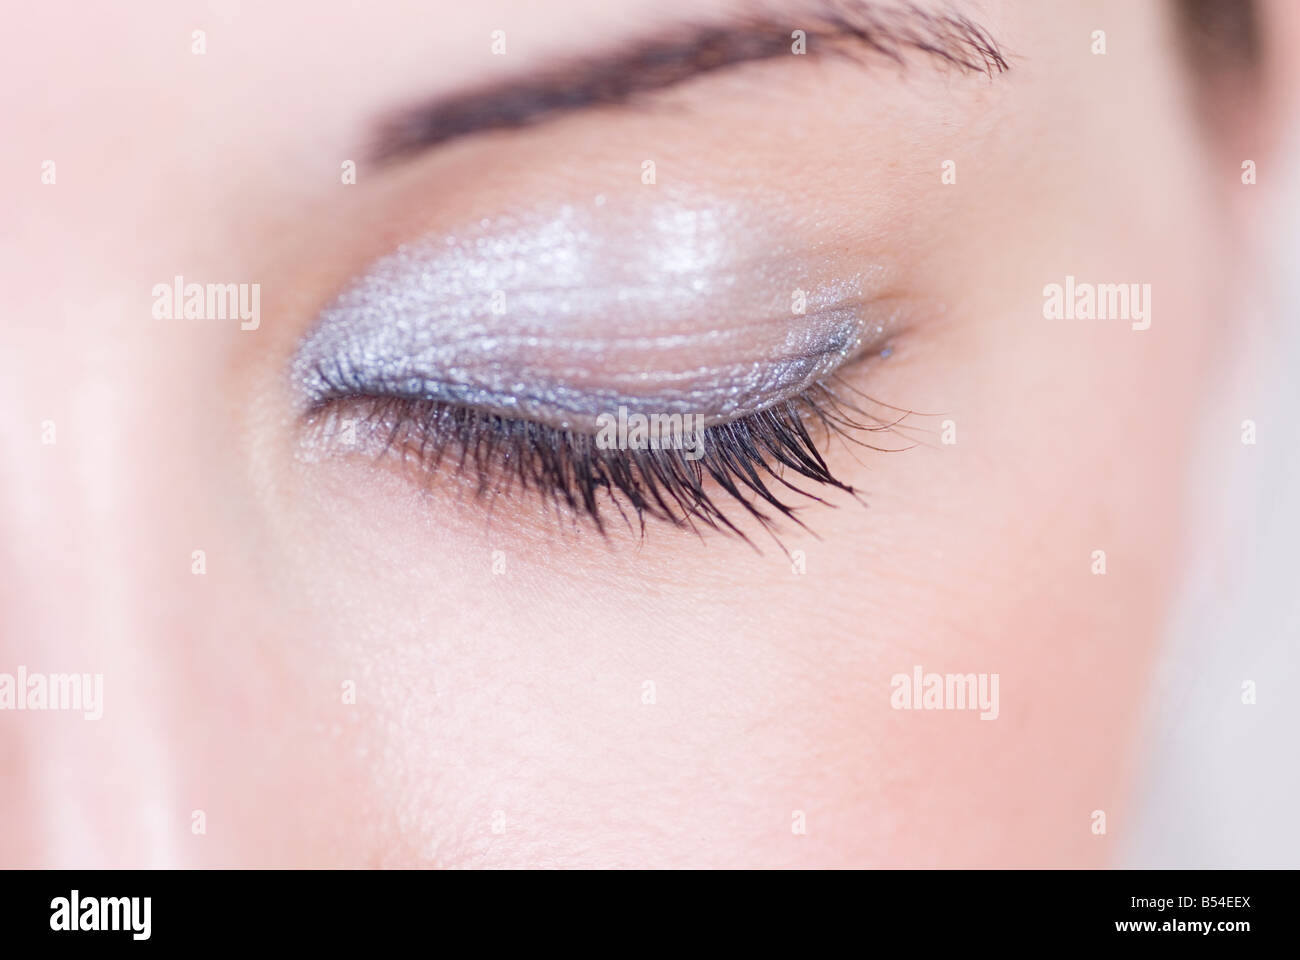 Woman with eyeshadow makeup Stock Photo